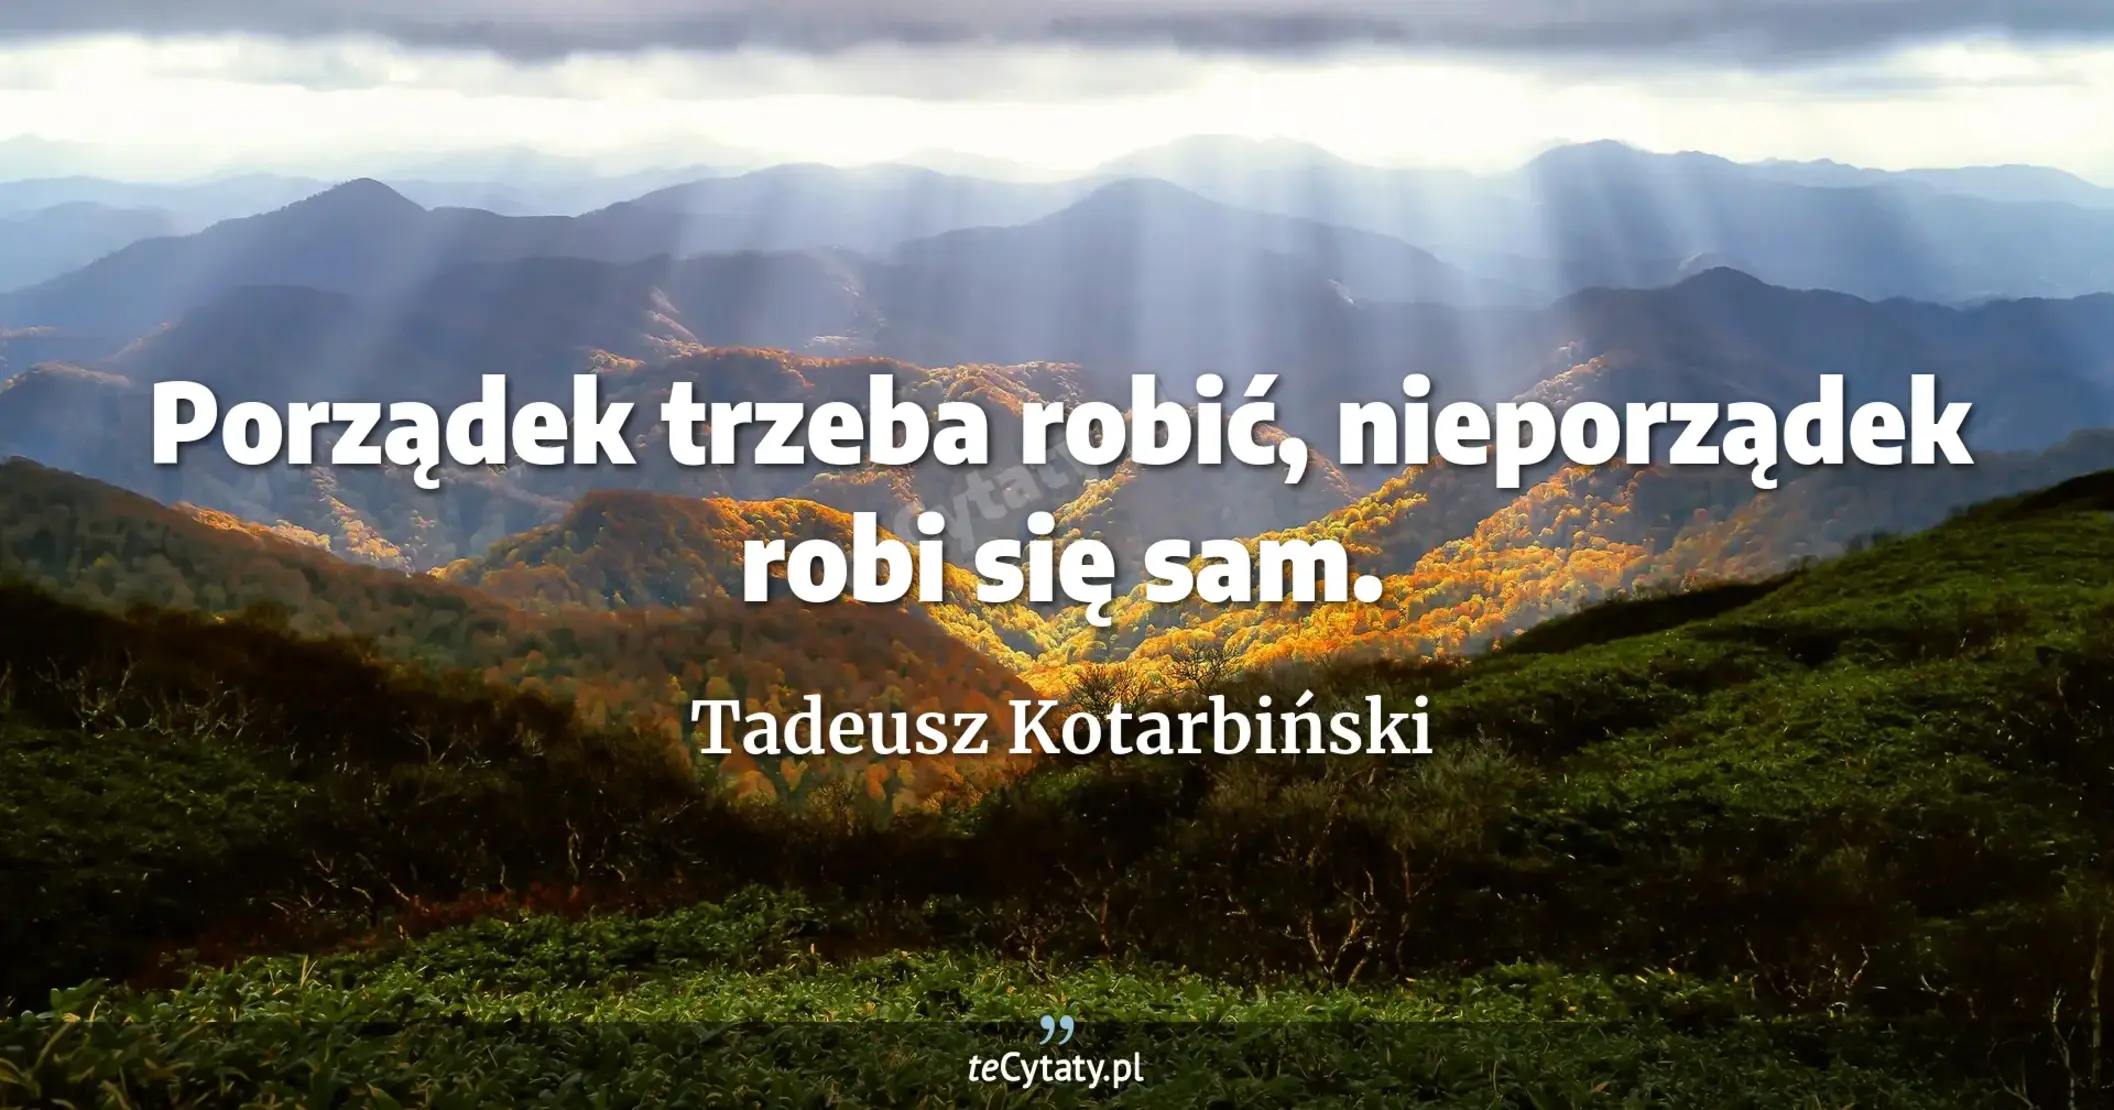 Porządek trzeba robić, nieporządek robi się sam. - Tadeusz Kotarbiński